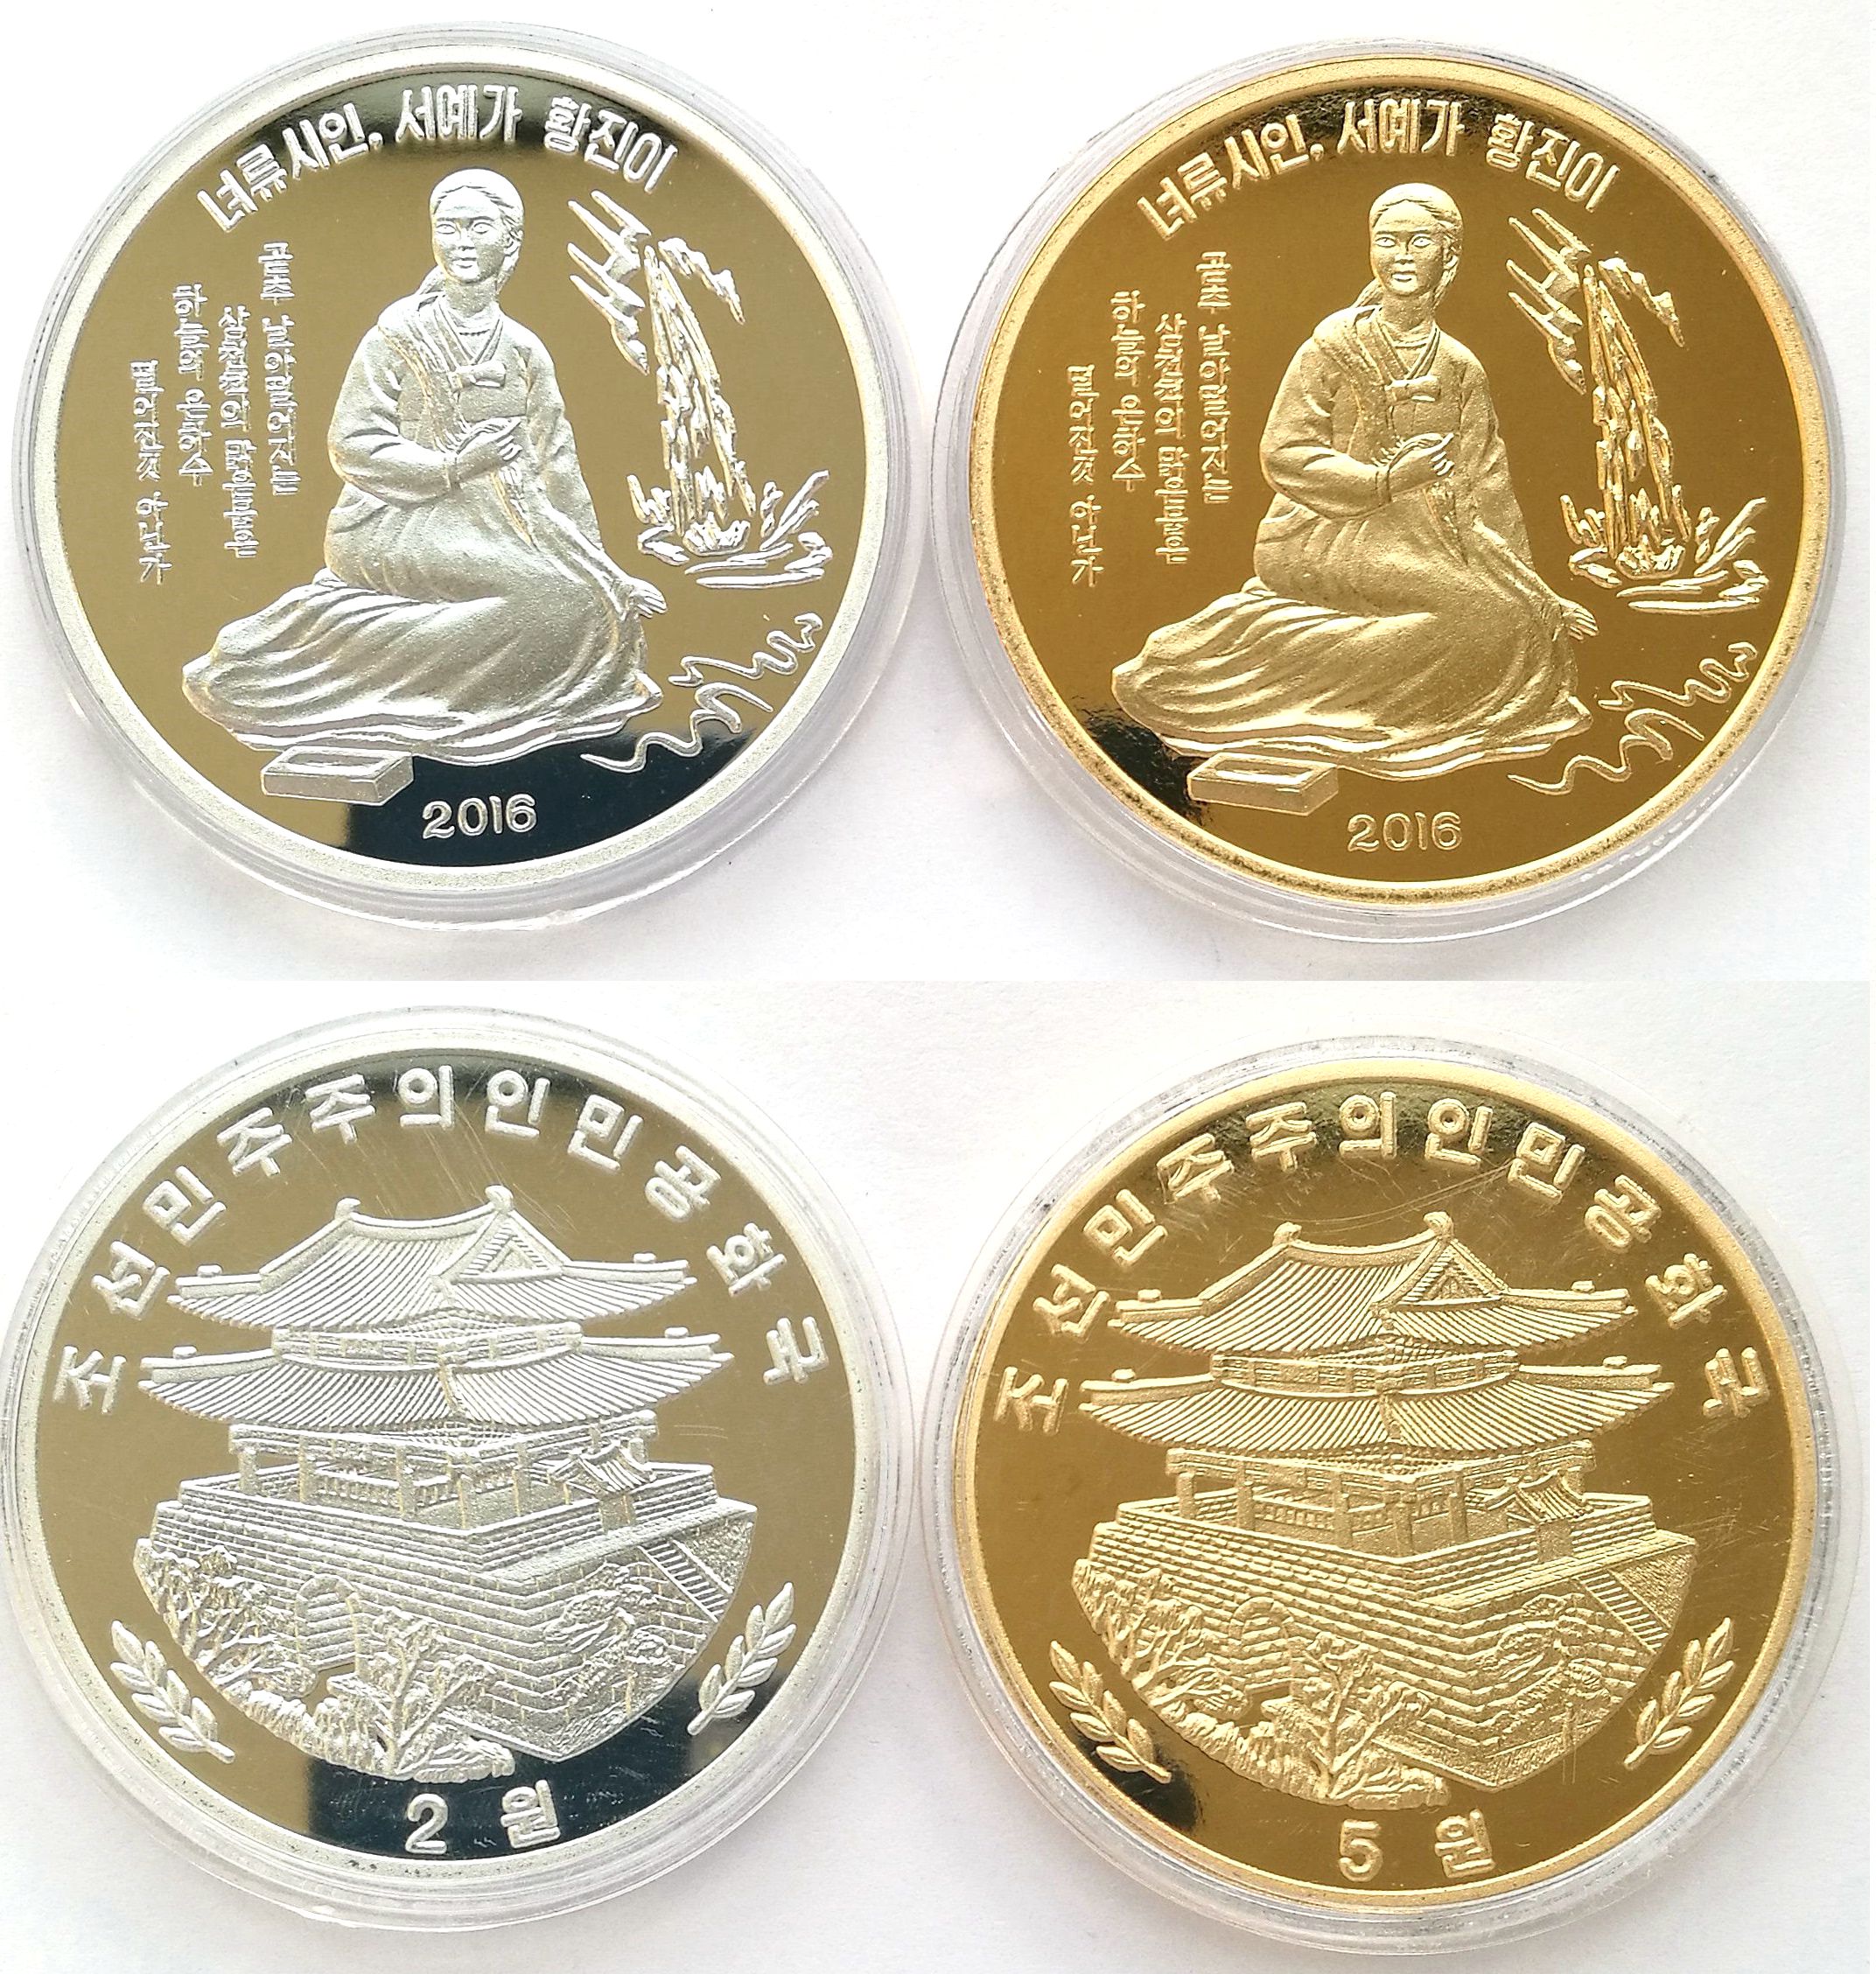 L3224, Korea Coins "Hwang Jin Yi" Coins, 2 pcs Alu and Brass, 2016